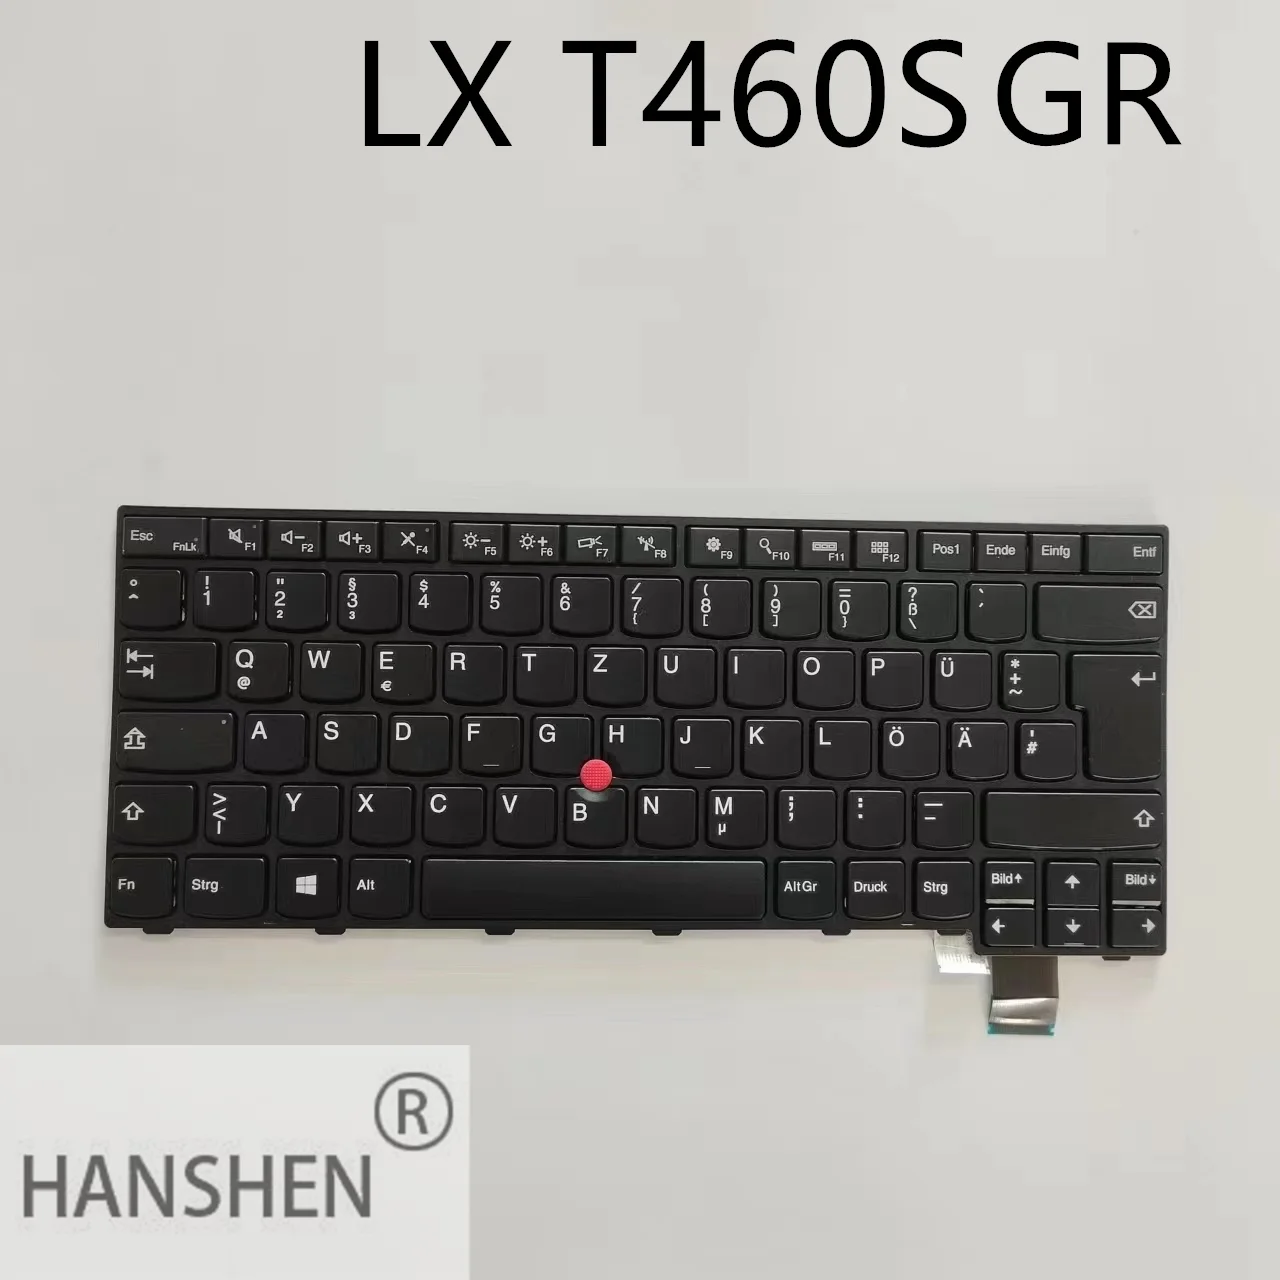 

Новая клавиатура HANSHEN JP LA US GR UK для ноутбука IBM Lenovo ThinkPad new S2 T460S T460P без подсветки